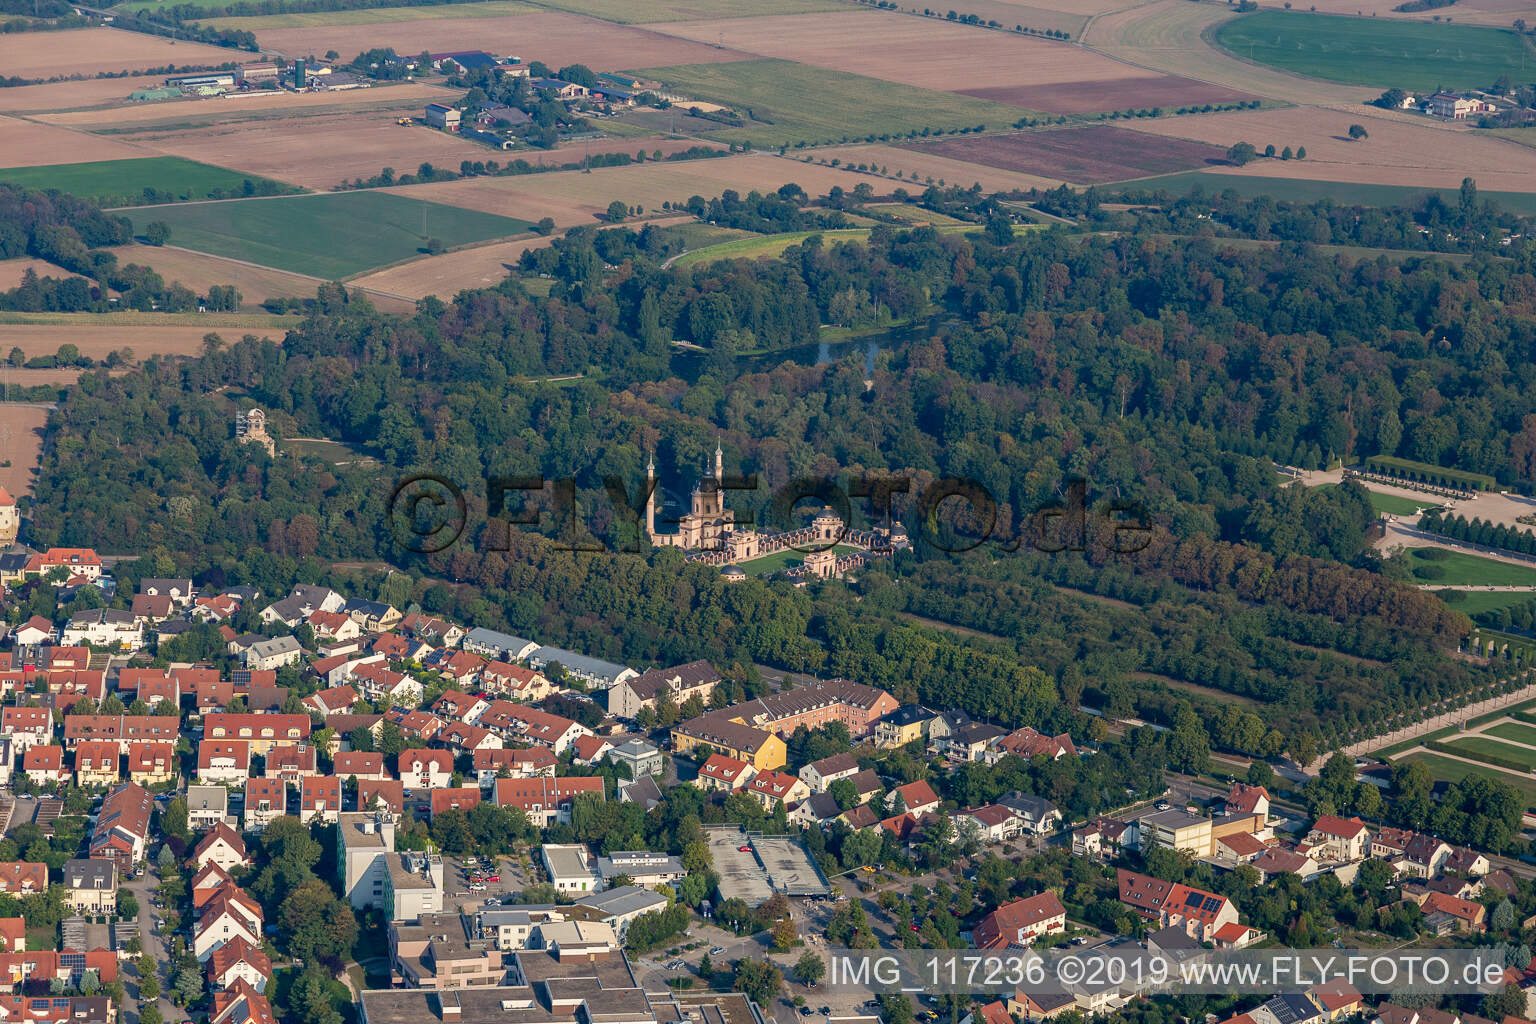 Aerial view of Mosque in Schwetzingen Castle Park in Schwetzingen in the state Baden-Wuerttemberg, Germany